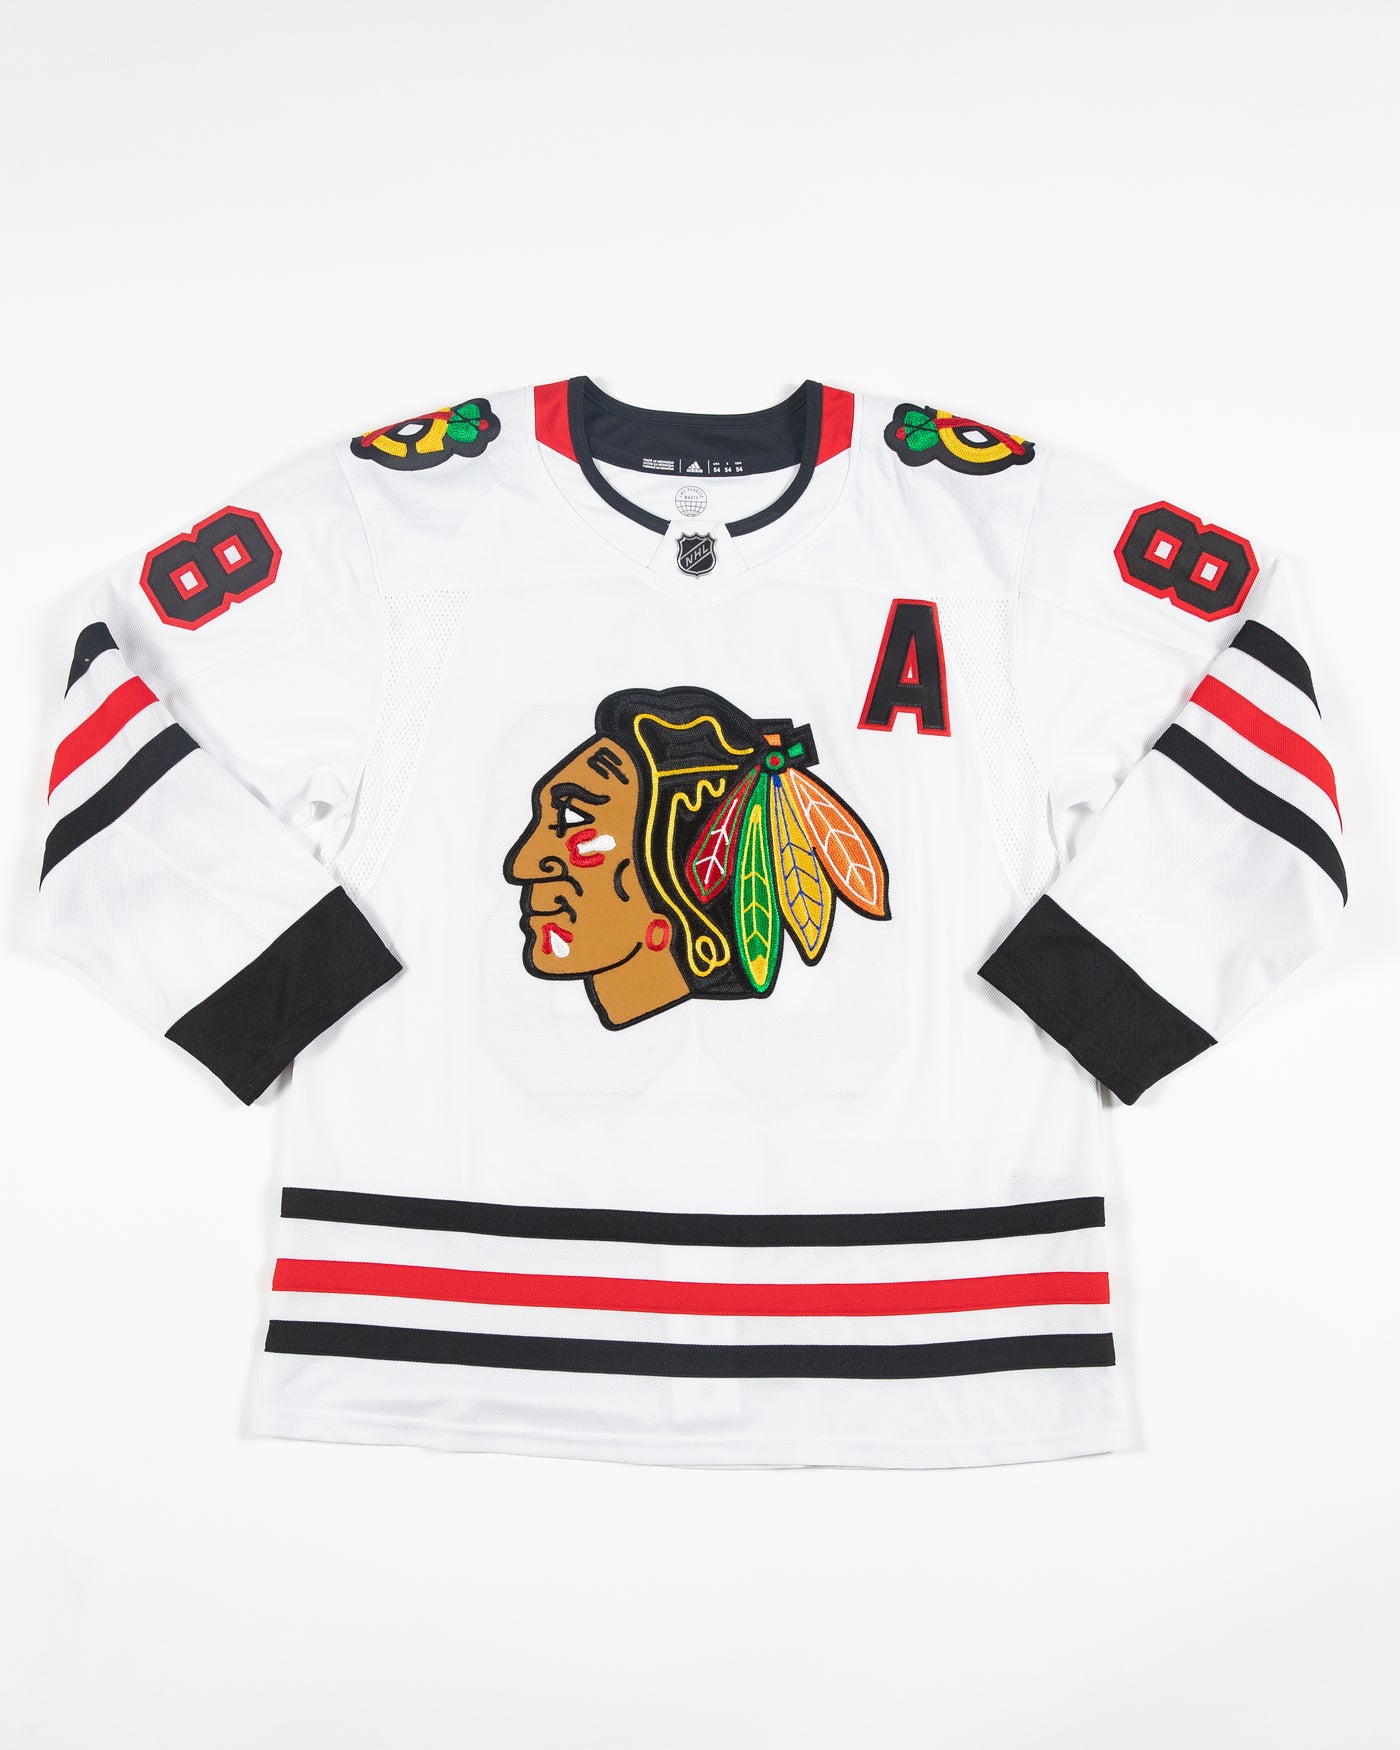 Chicago Blackhawks Patrick Kane Jersey Size 44 Large #88 NHL Hockey Tee